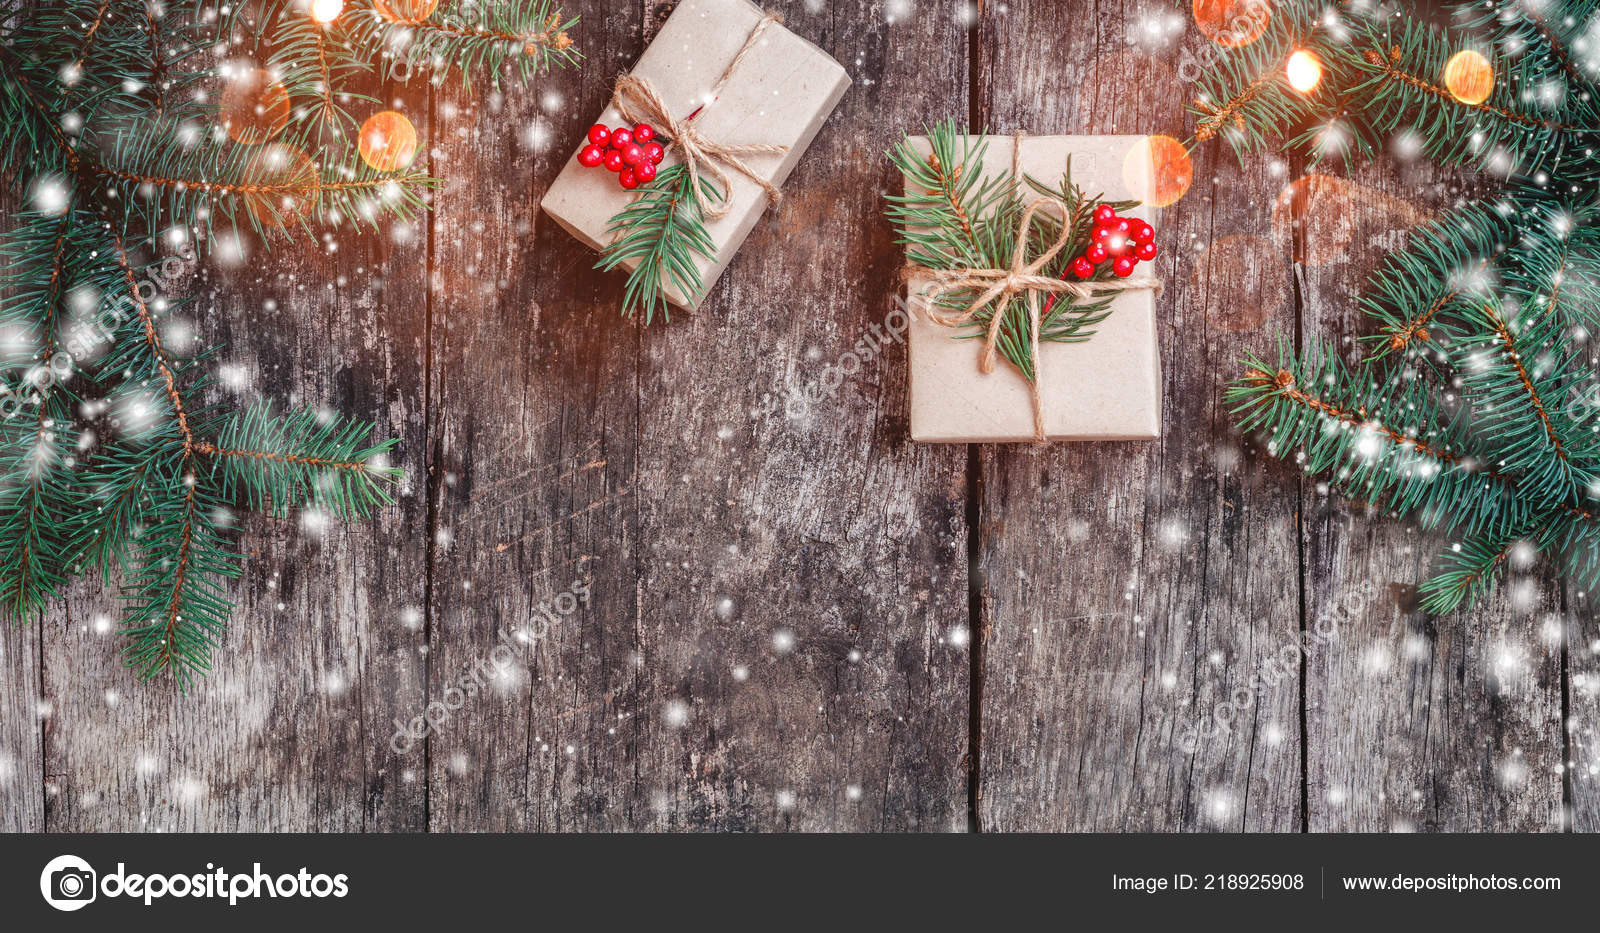 Hình nền cây thông, quà tặng, cành thông và nền gỗ là sự lựa chọn tuyệt vời để tô điểm ngôi nhà và trang trí cho mùa lễ hội đang đến gần. Hãy cùng thưởng thức bộ sưu tập ảnh nền Giáng Sinh này để tìm ra những hình ảnh đầy ngộ nghĩnh và ấm áp nhất.